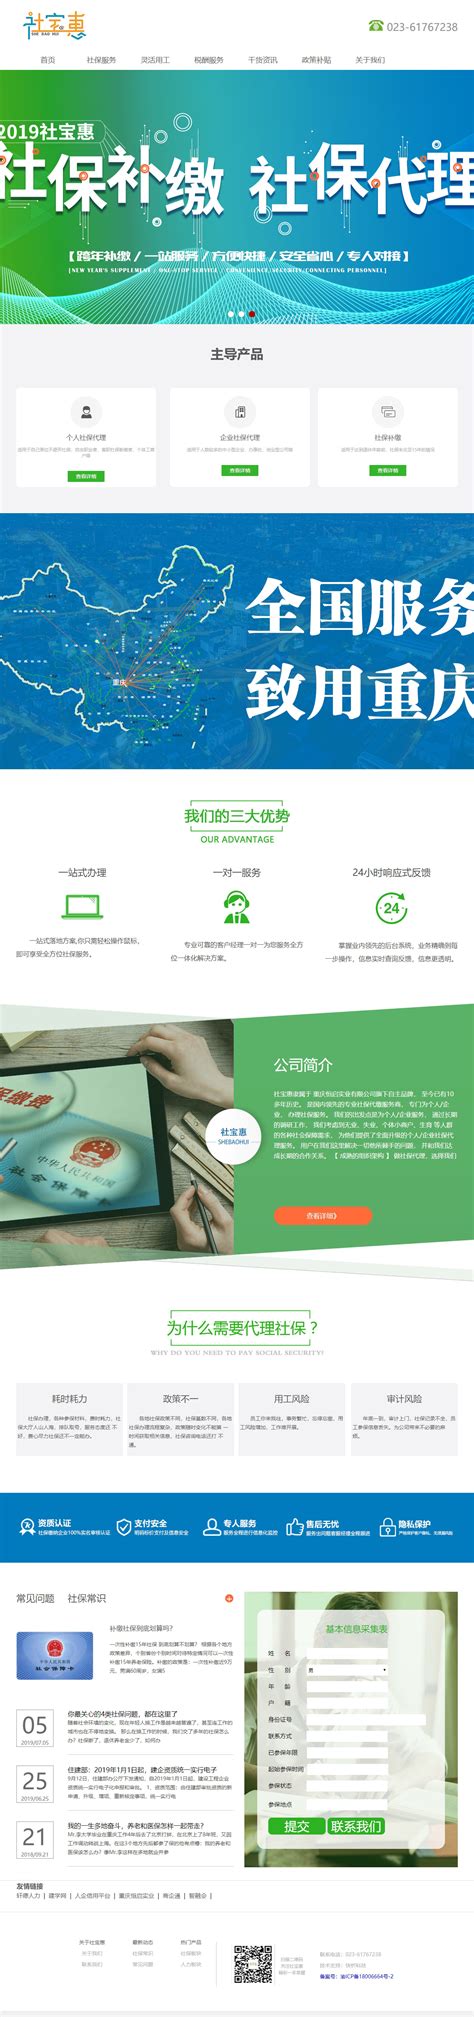 重庆营销网站建设排行榜